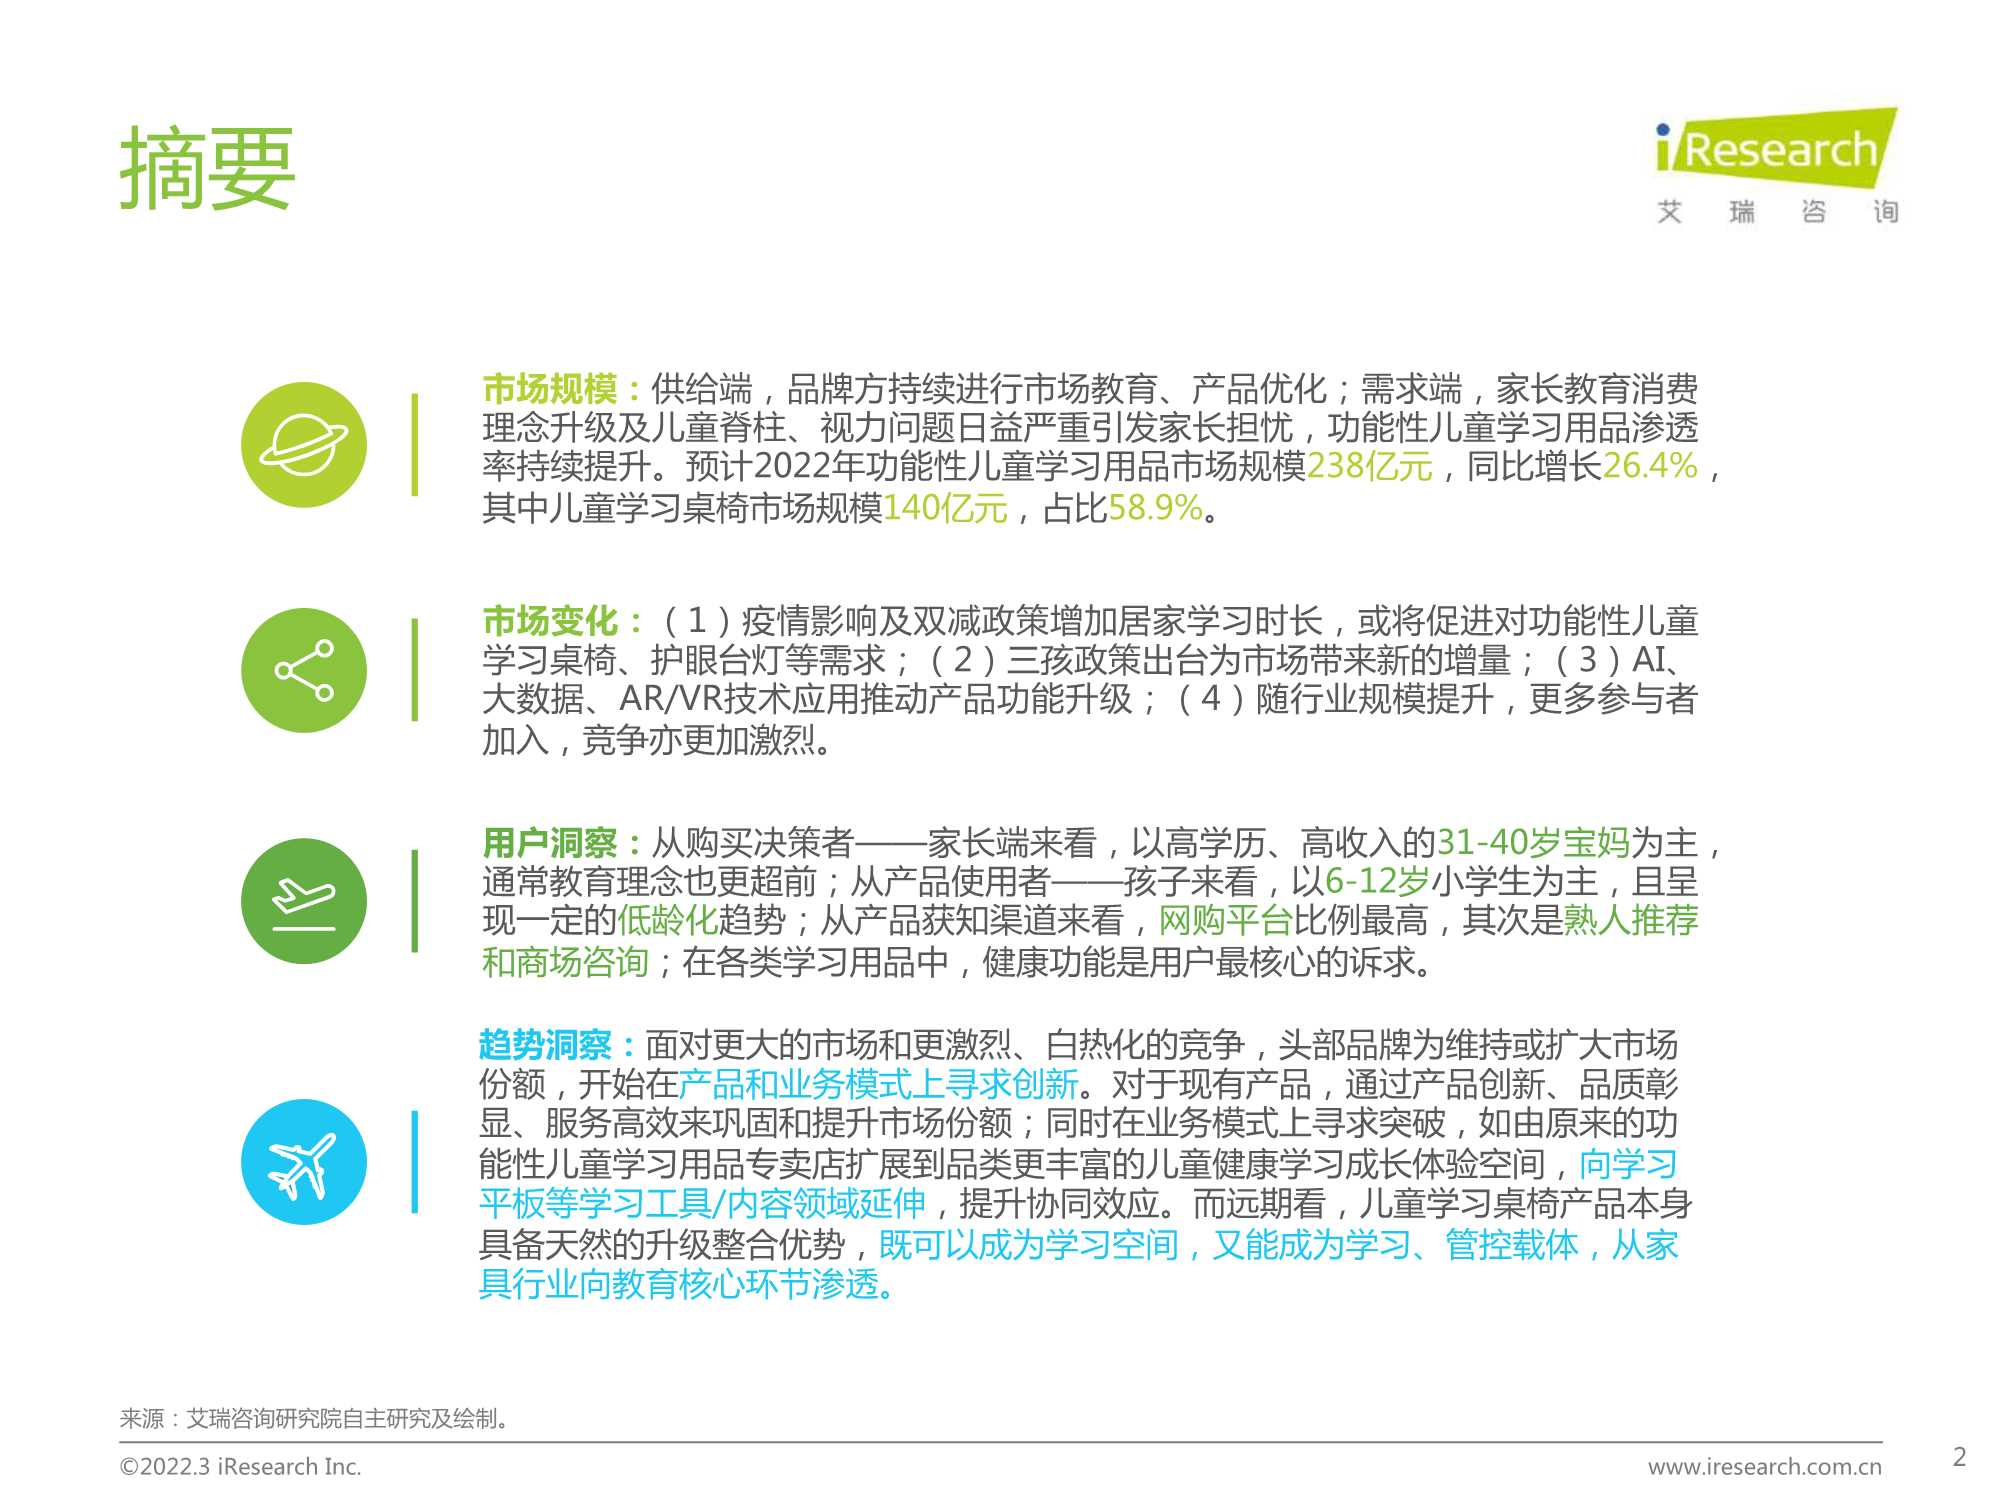 艾瑞咨询-2022年中国功能性儿童学习用品行业趋势洞察报告-2022.03-46页